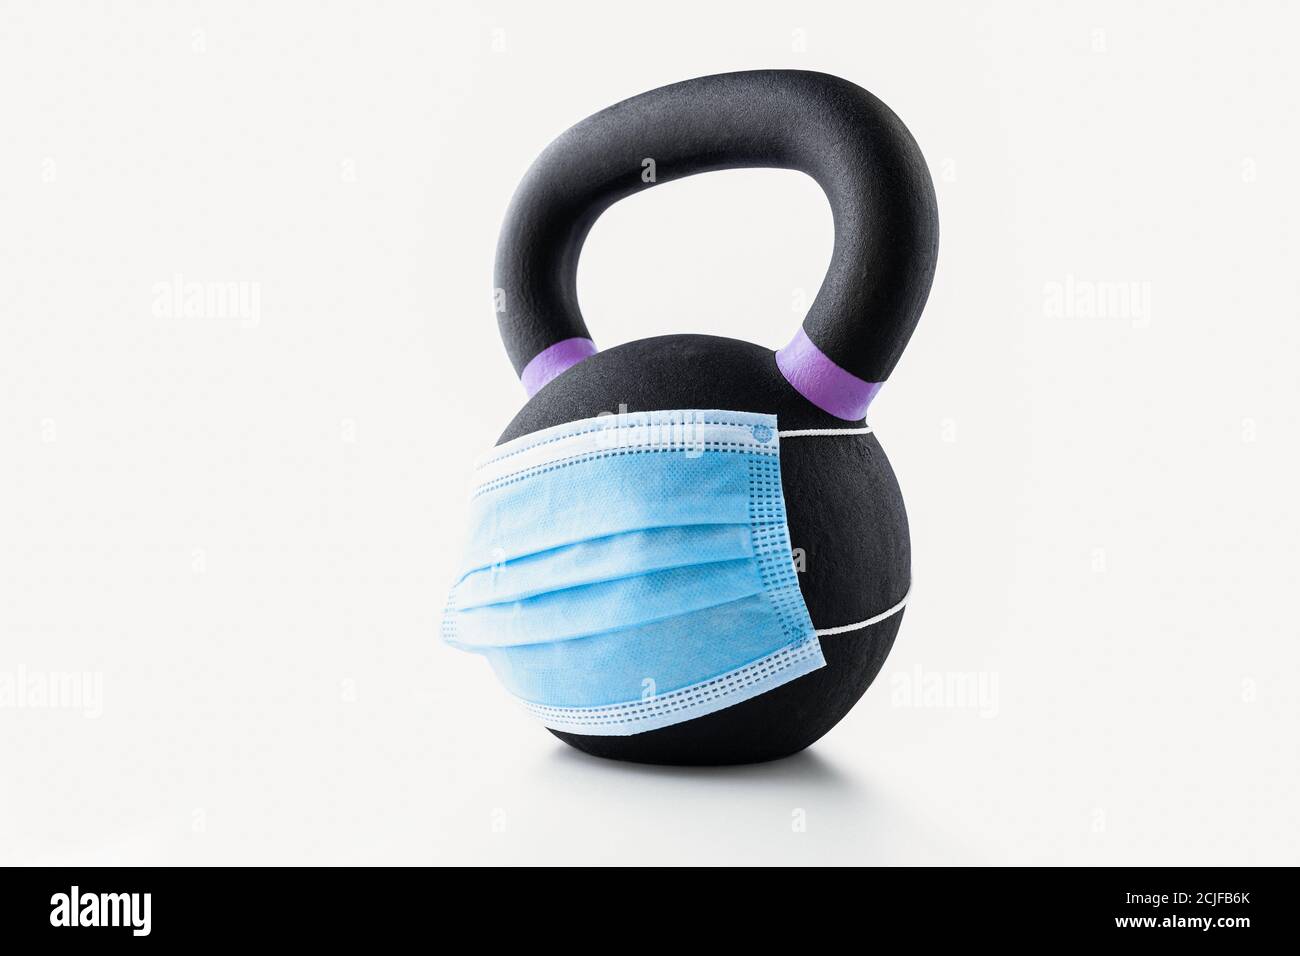 Campana nera per bollitore con marcature viola e maschera chirurgica blu su sfondo bianco Foto Stock